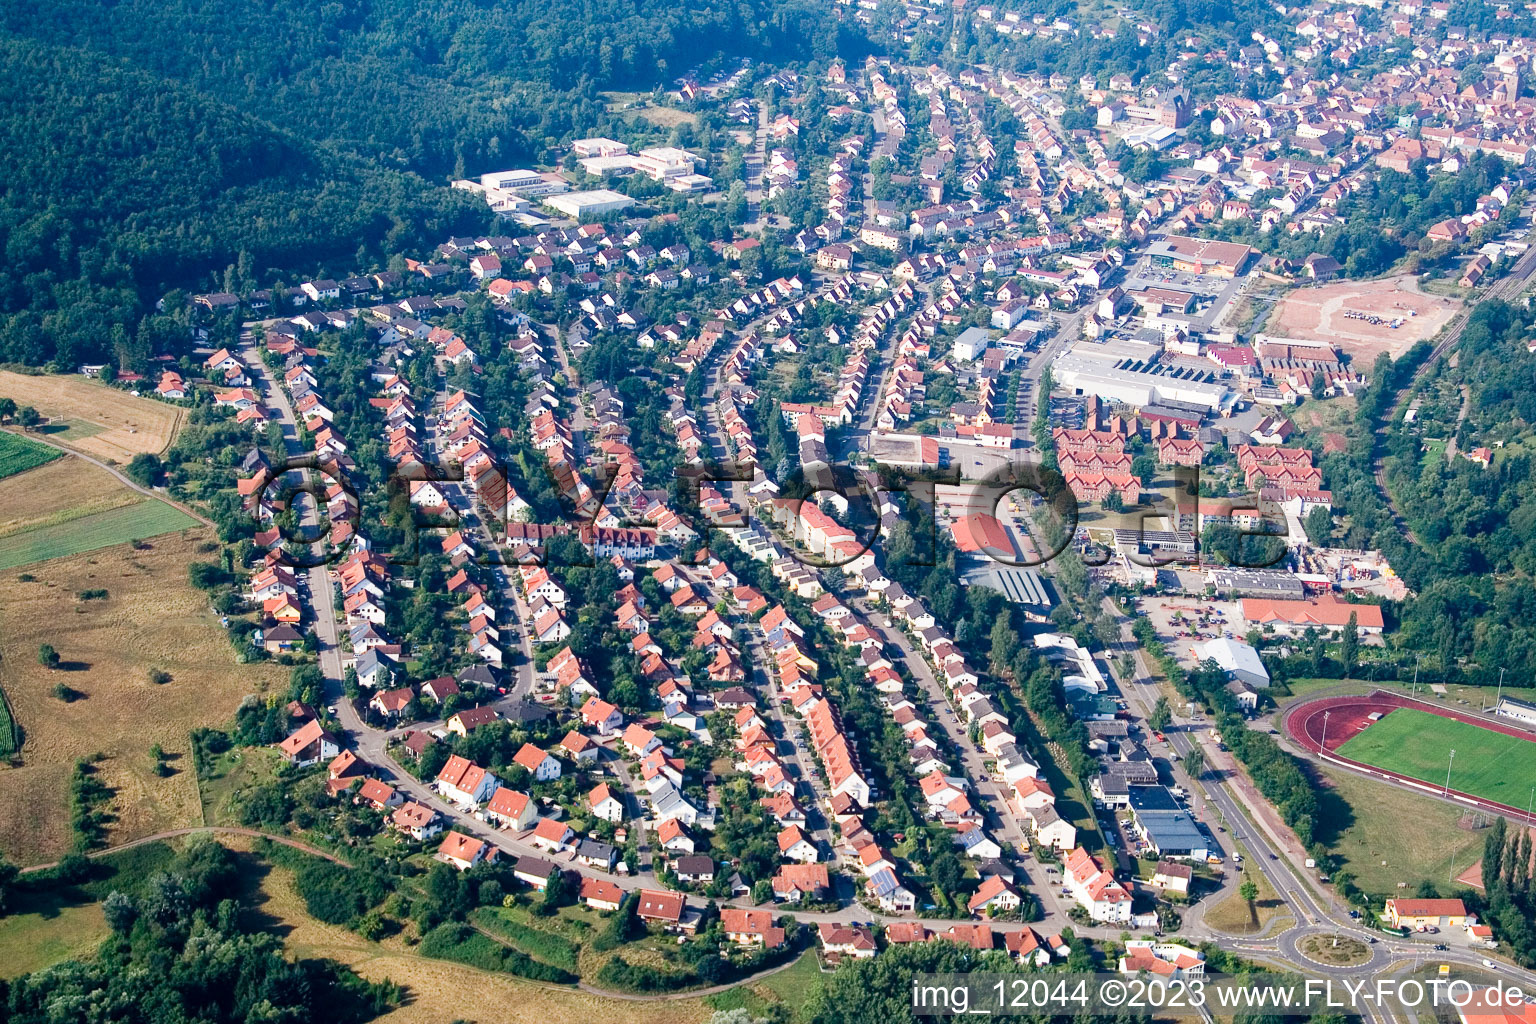 Luftbild von Ortsteil Queichhambach in Annweiler am Trifels im Bundesland Rheinland-Pfalz, Deutschland